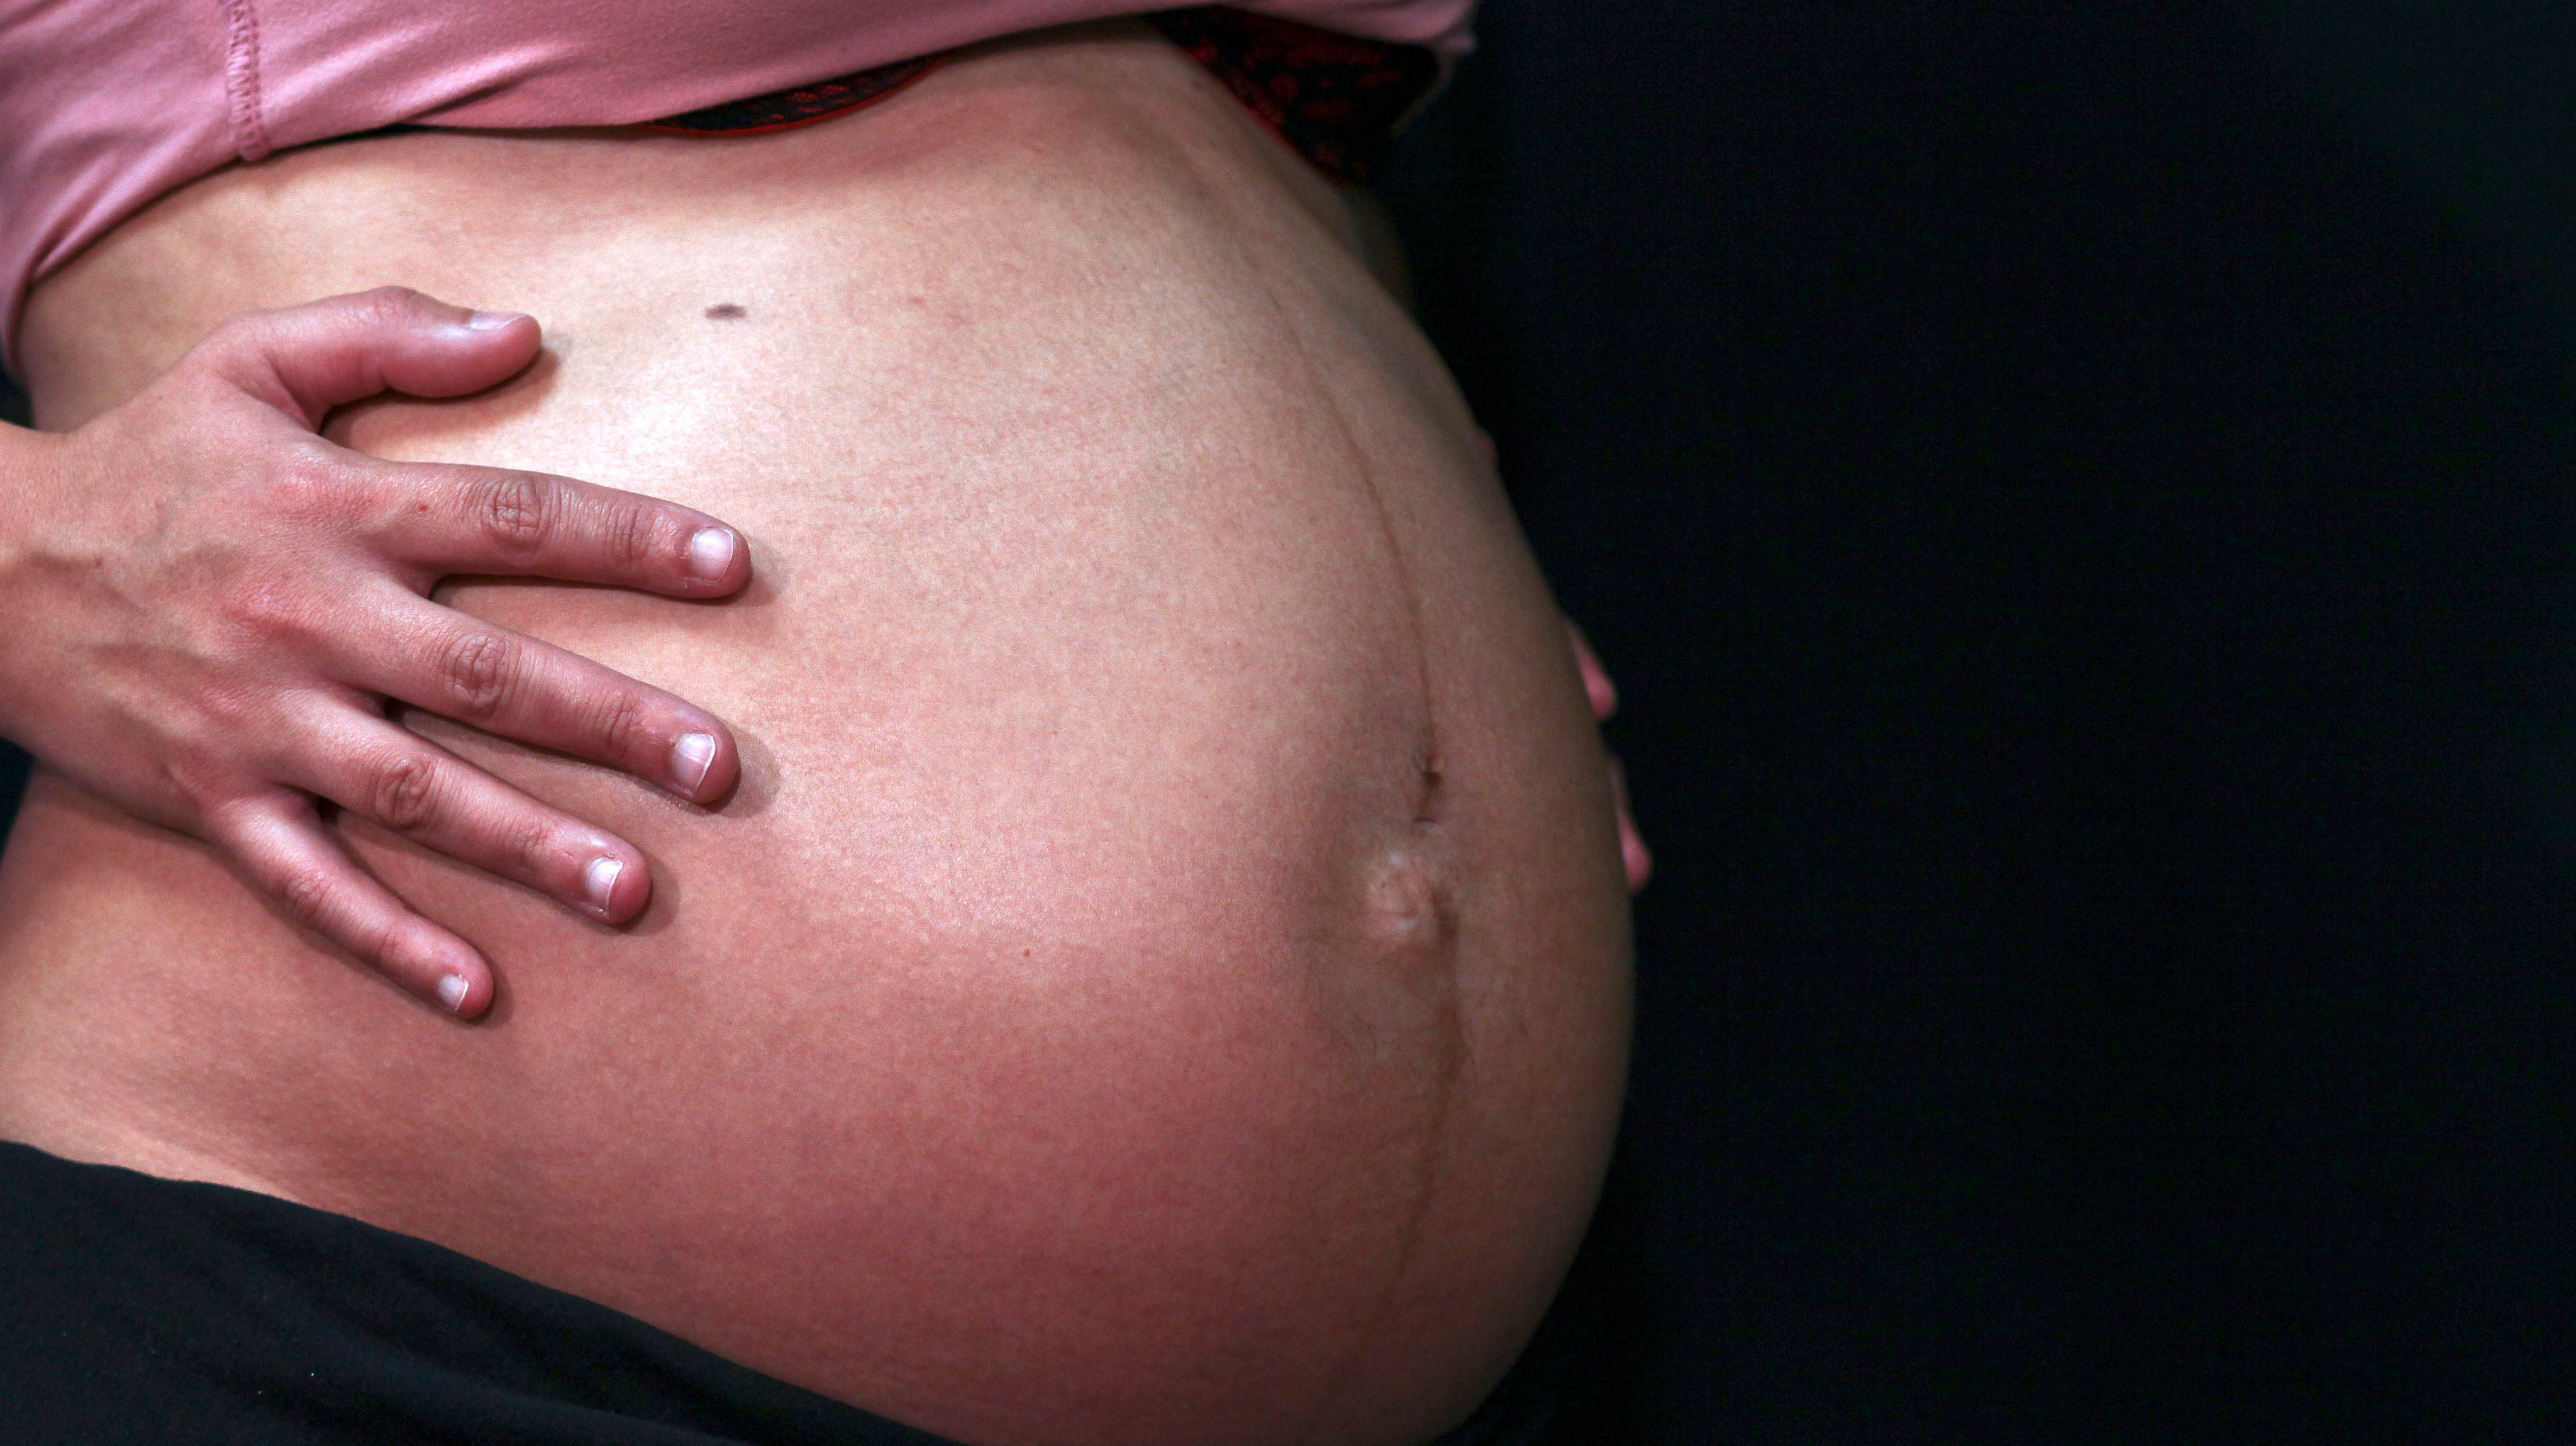 O parto é um processo altamente complicado que envolve sinais bioquímicos e fisiológicos coordenados